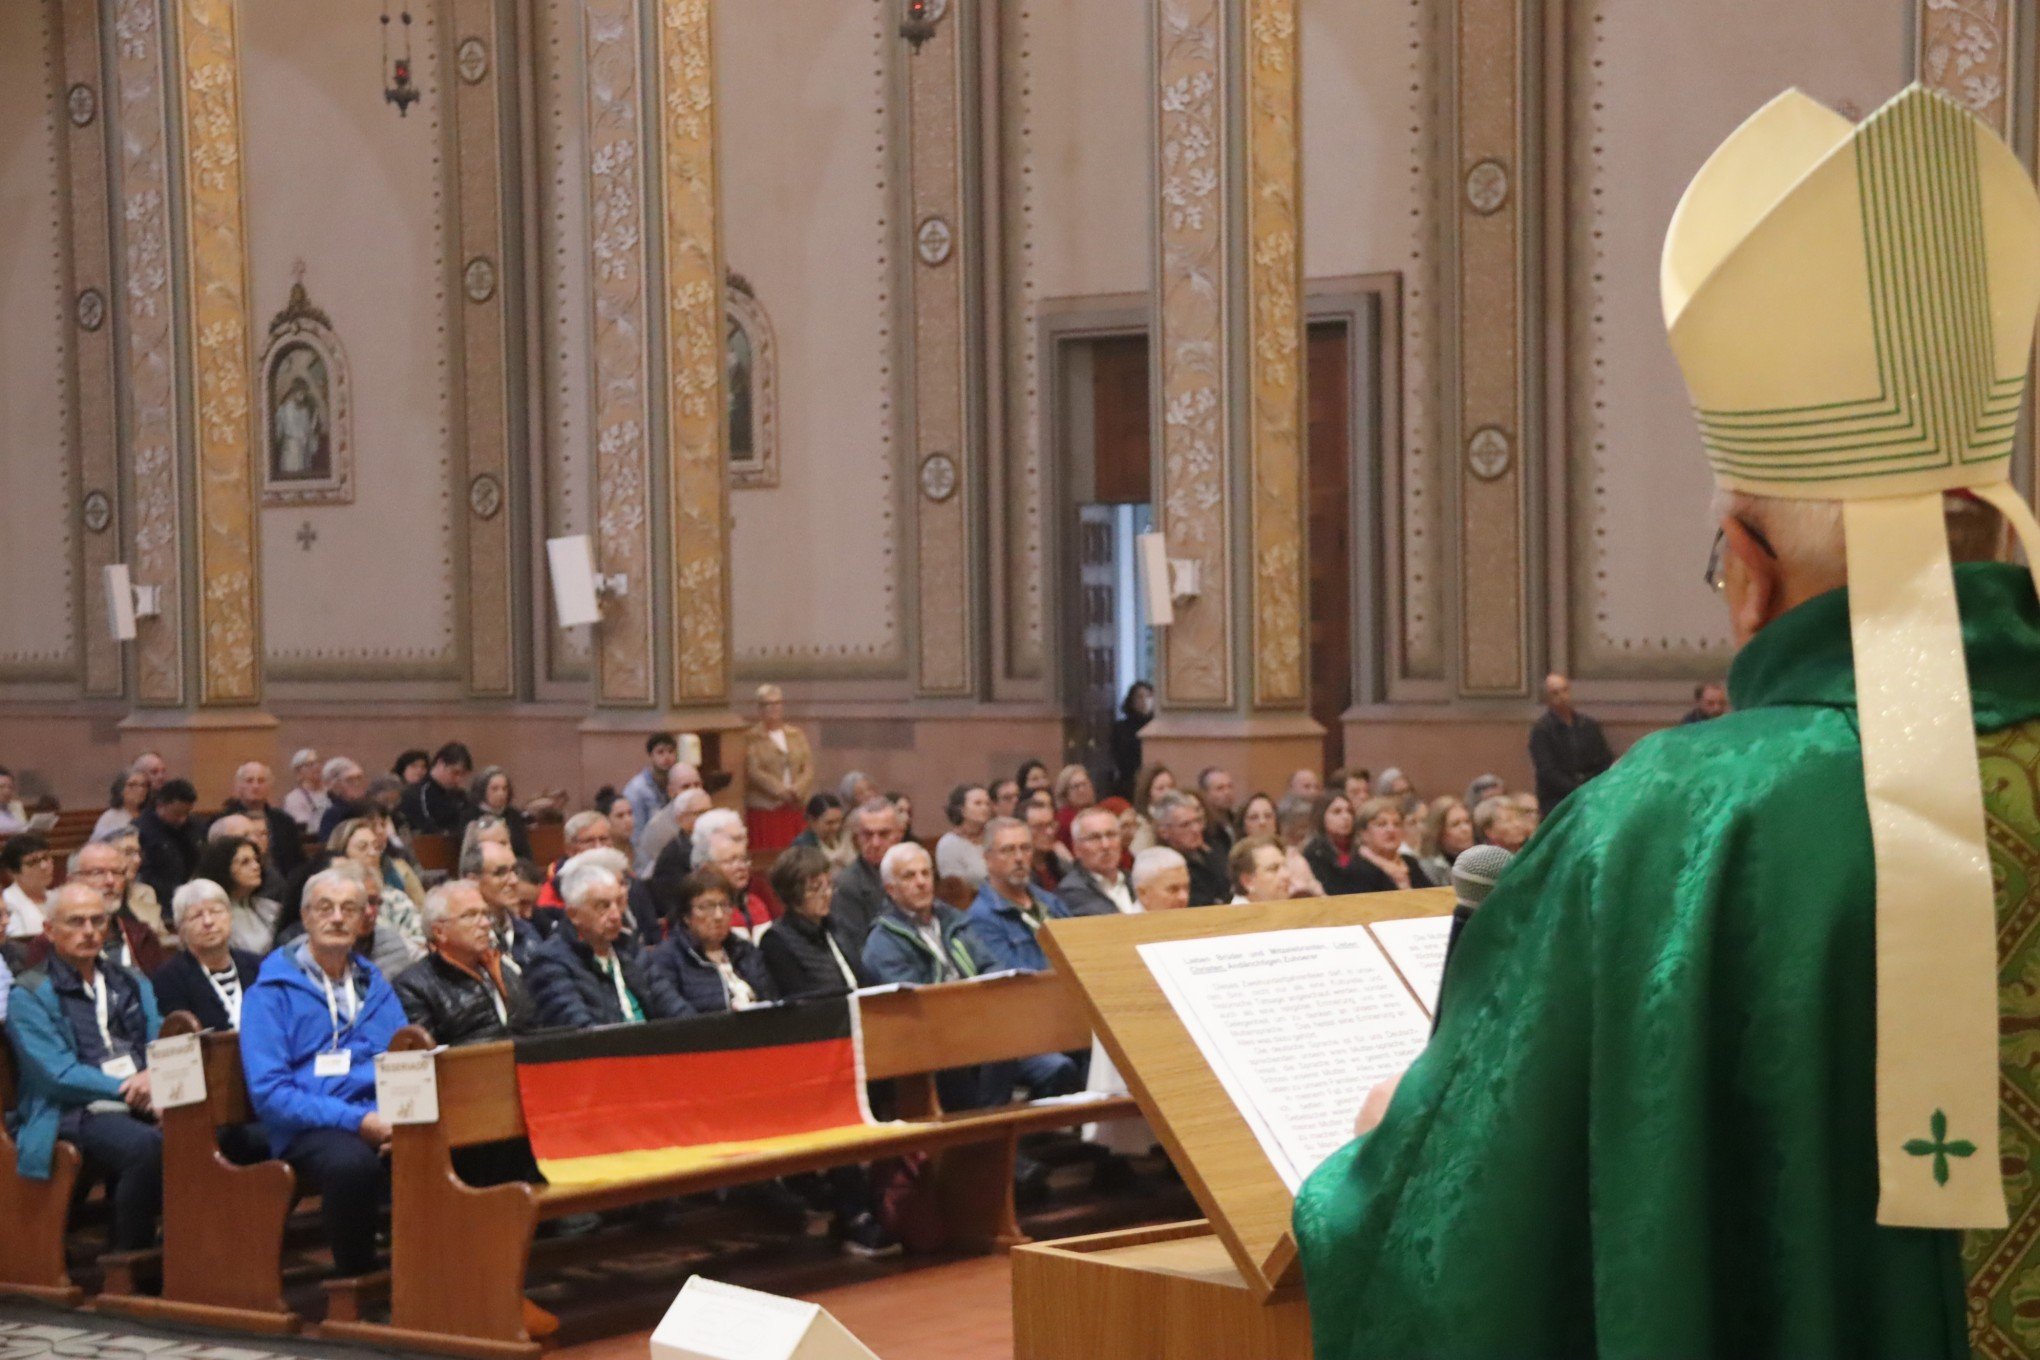 Missa em alemão celebra a cultura e a história em Novo Hamburgo